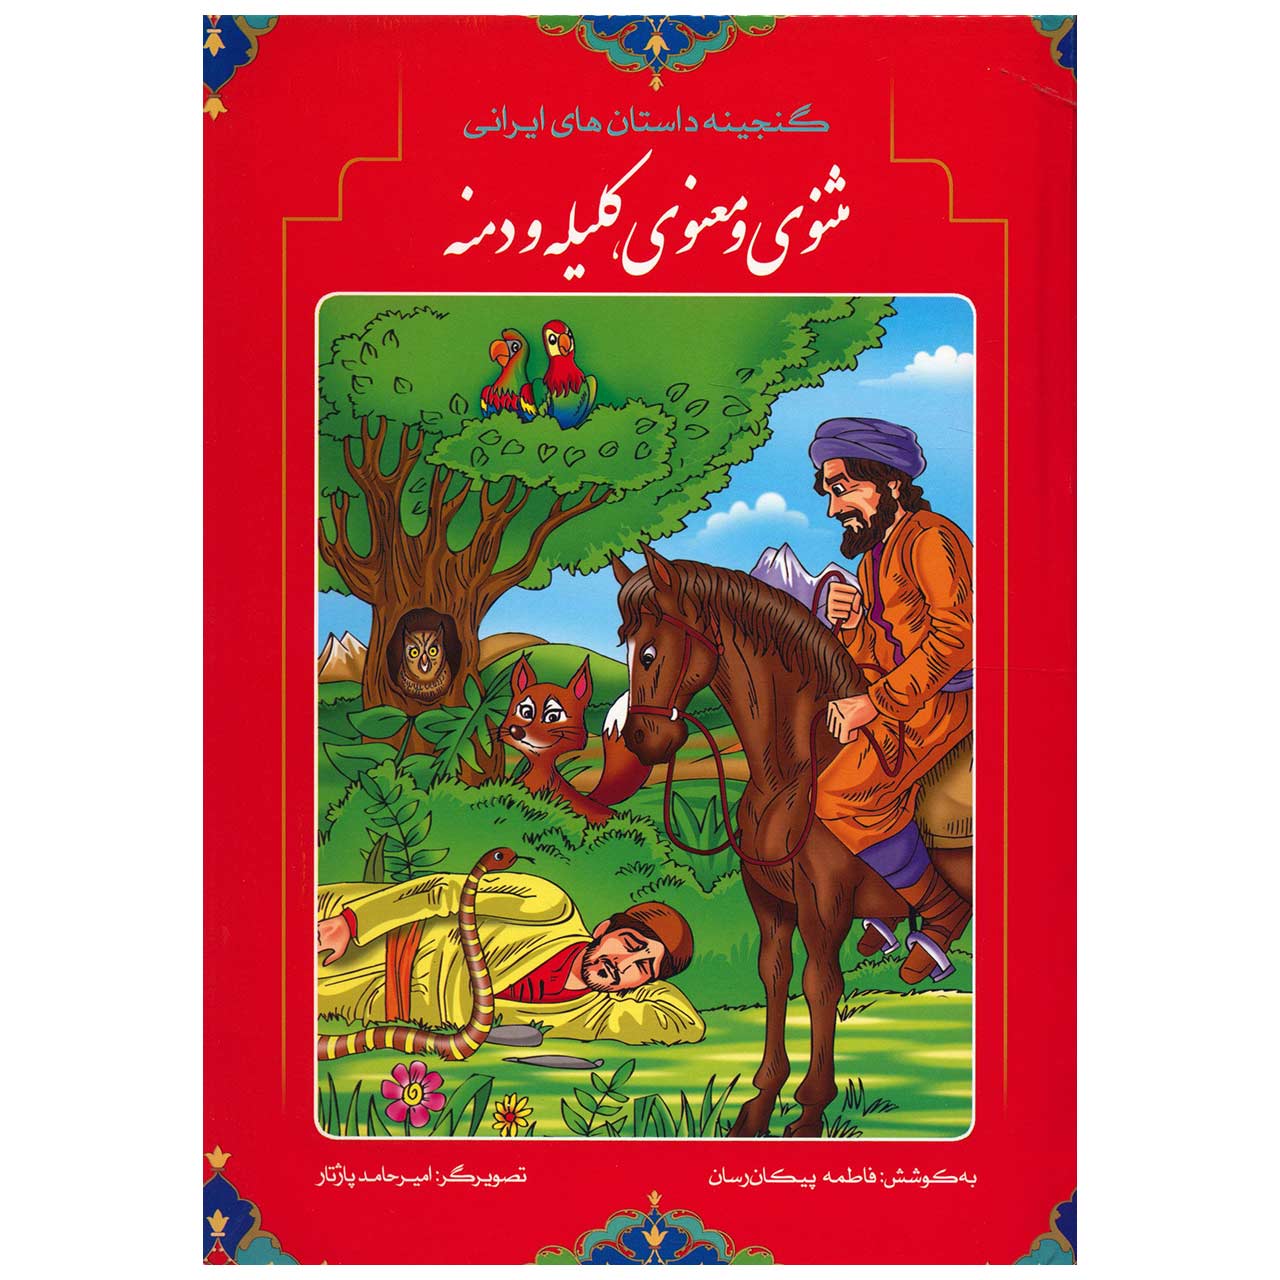 کتاب گنجینه داستان های ایرانی مثنوی معنوی و کلیله و دمنه اثر فاطمه پیکان رسان